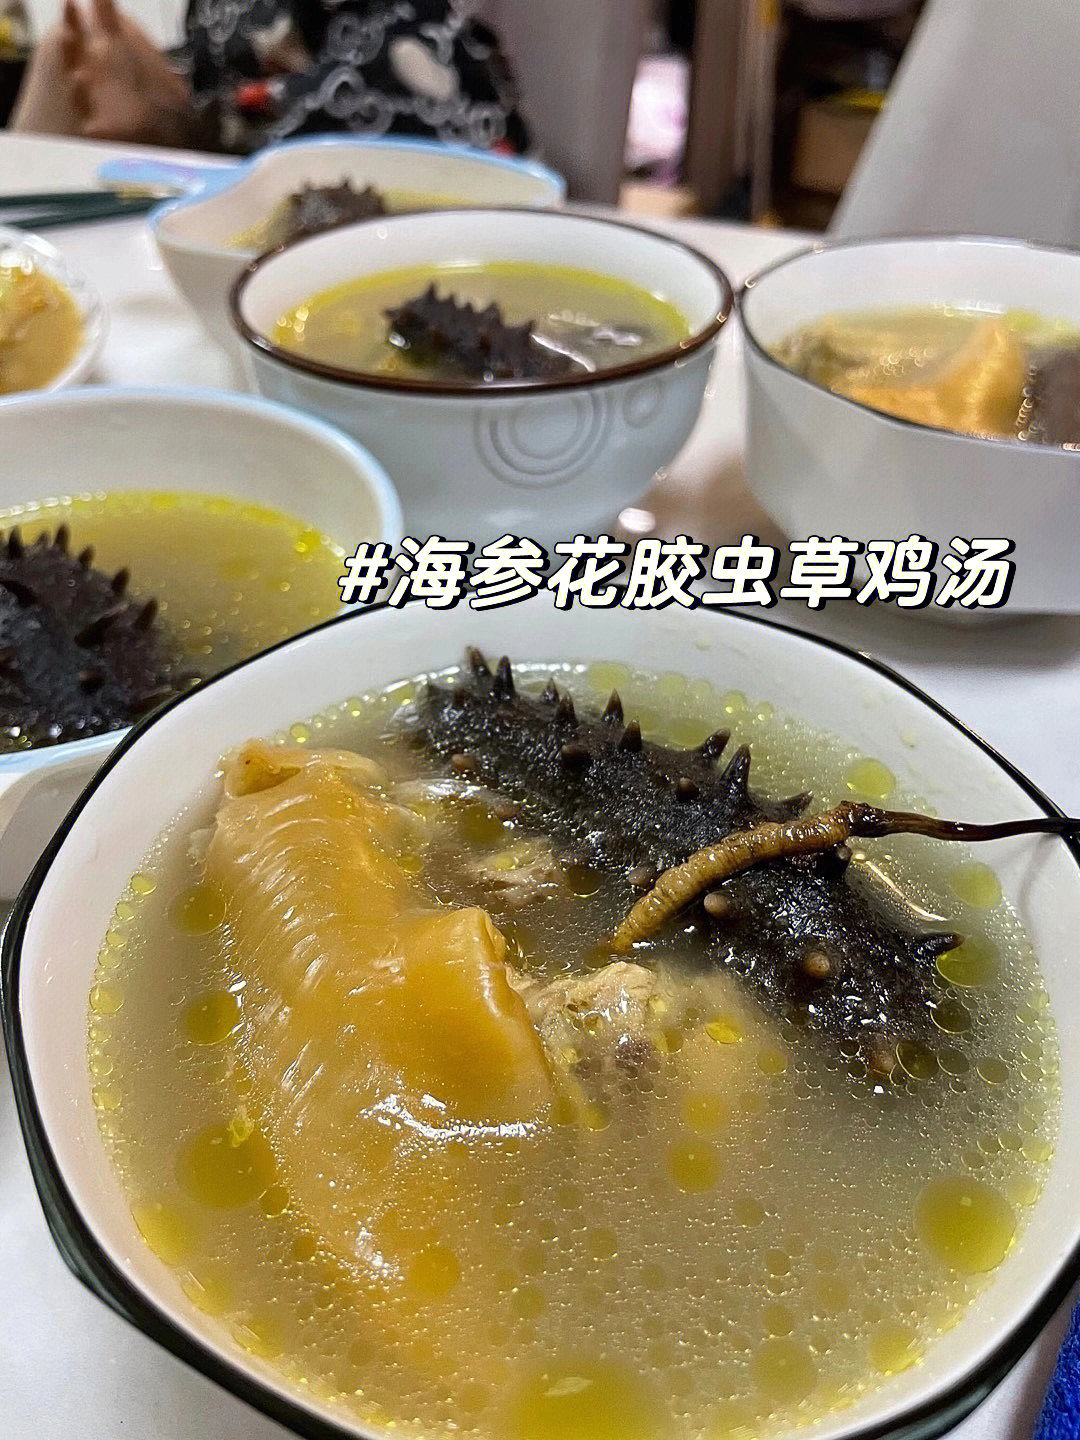 海参虫草鸡汤特别适合冬季进补的滋养汤品